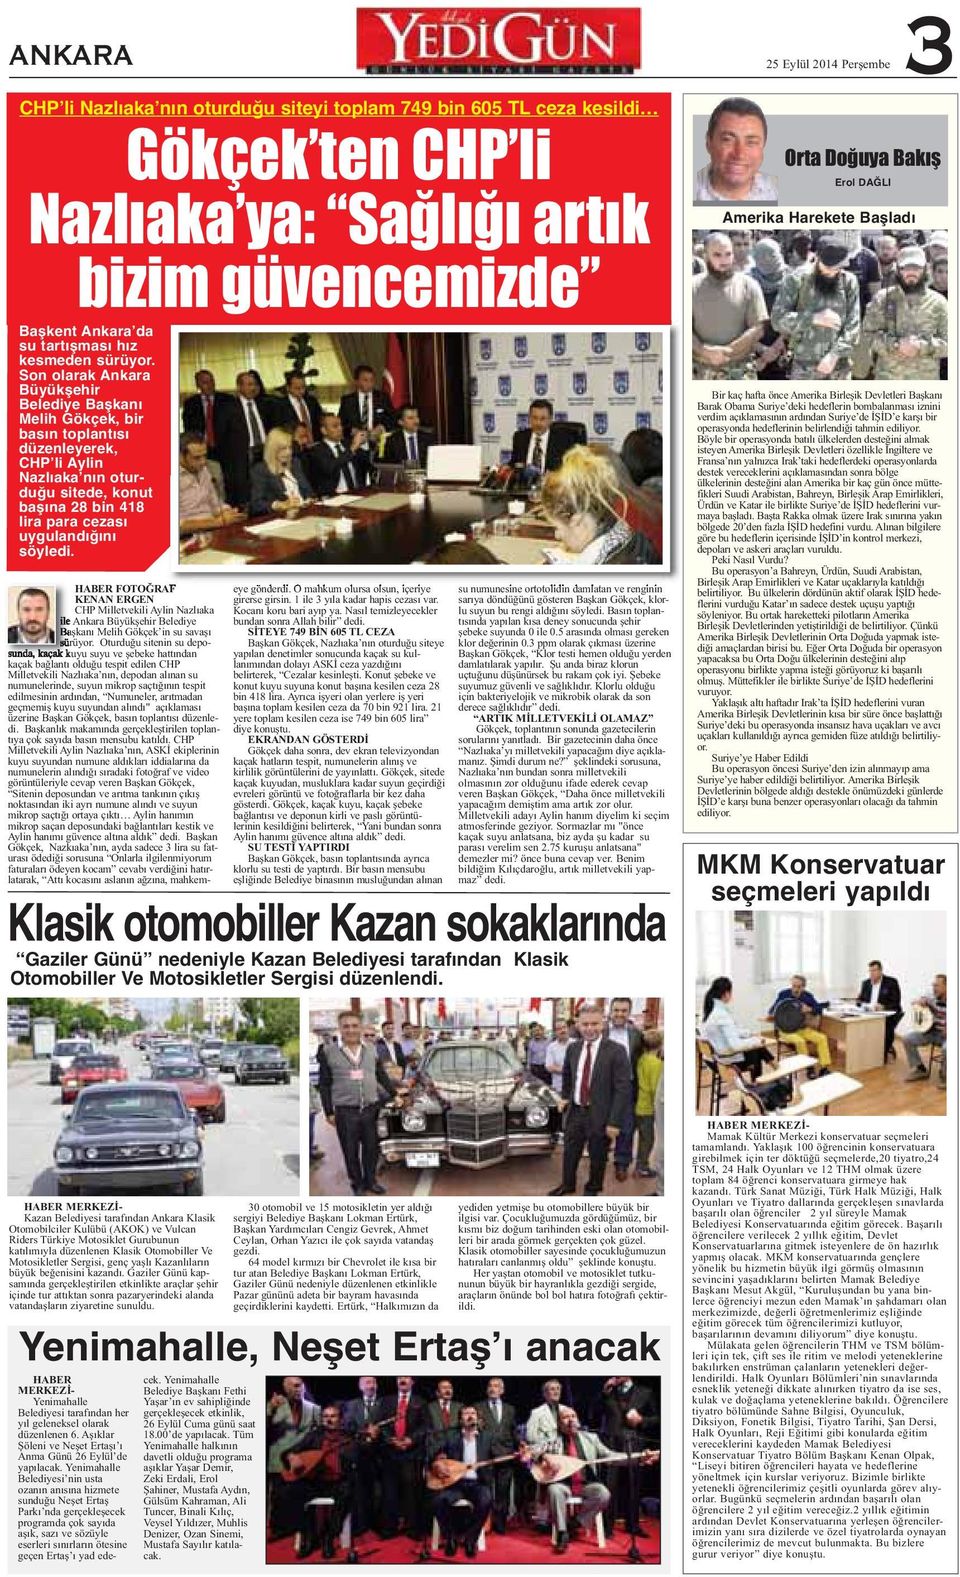 Son olarak Ankara Büyükşehir Belediye Başkanı Melih Gökçek, bir basın toplantısı düzenleyerek, CHP li Aylin Nazlıaka nın oturduğu sitede, konut başına 28 bin 418 lira para cezası uygulandığını